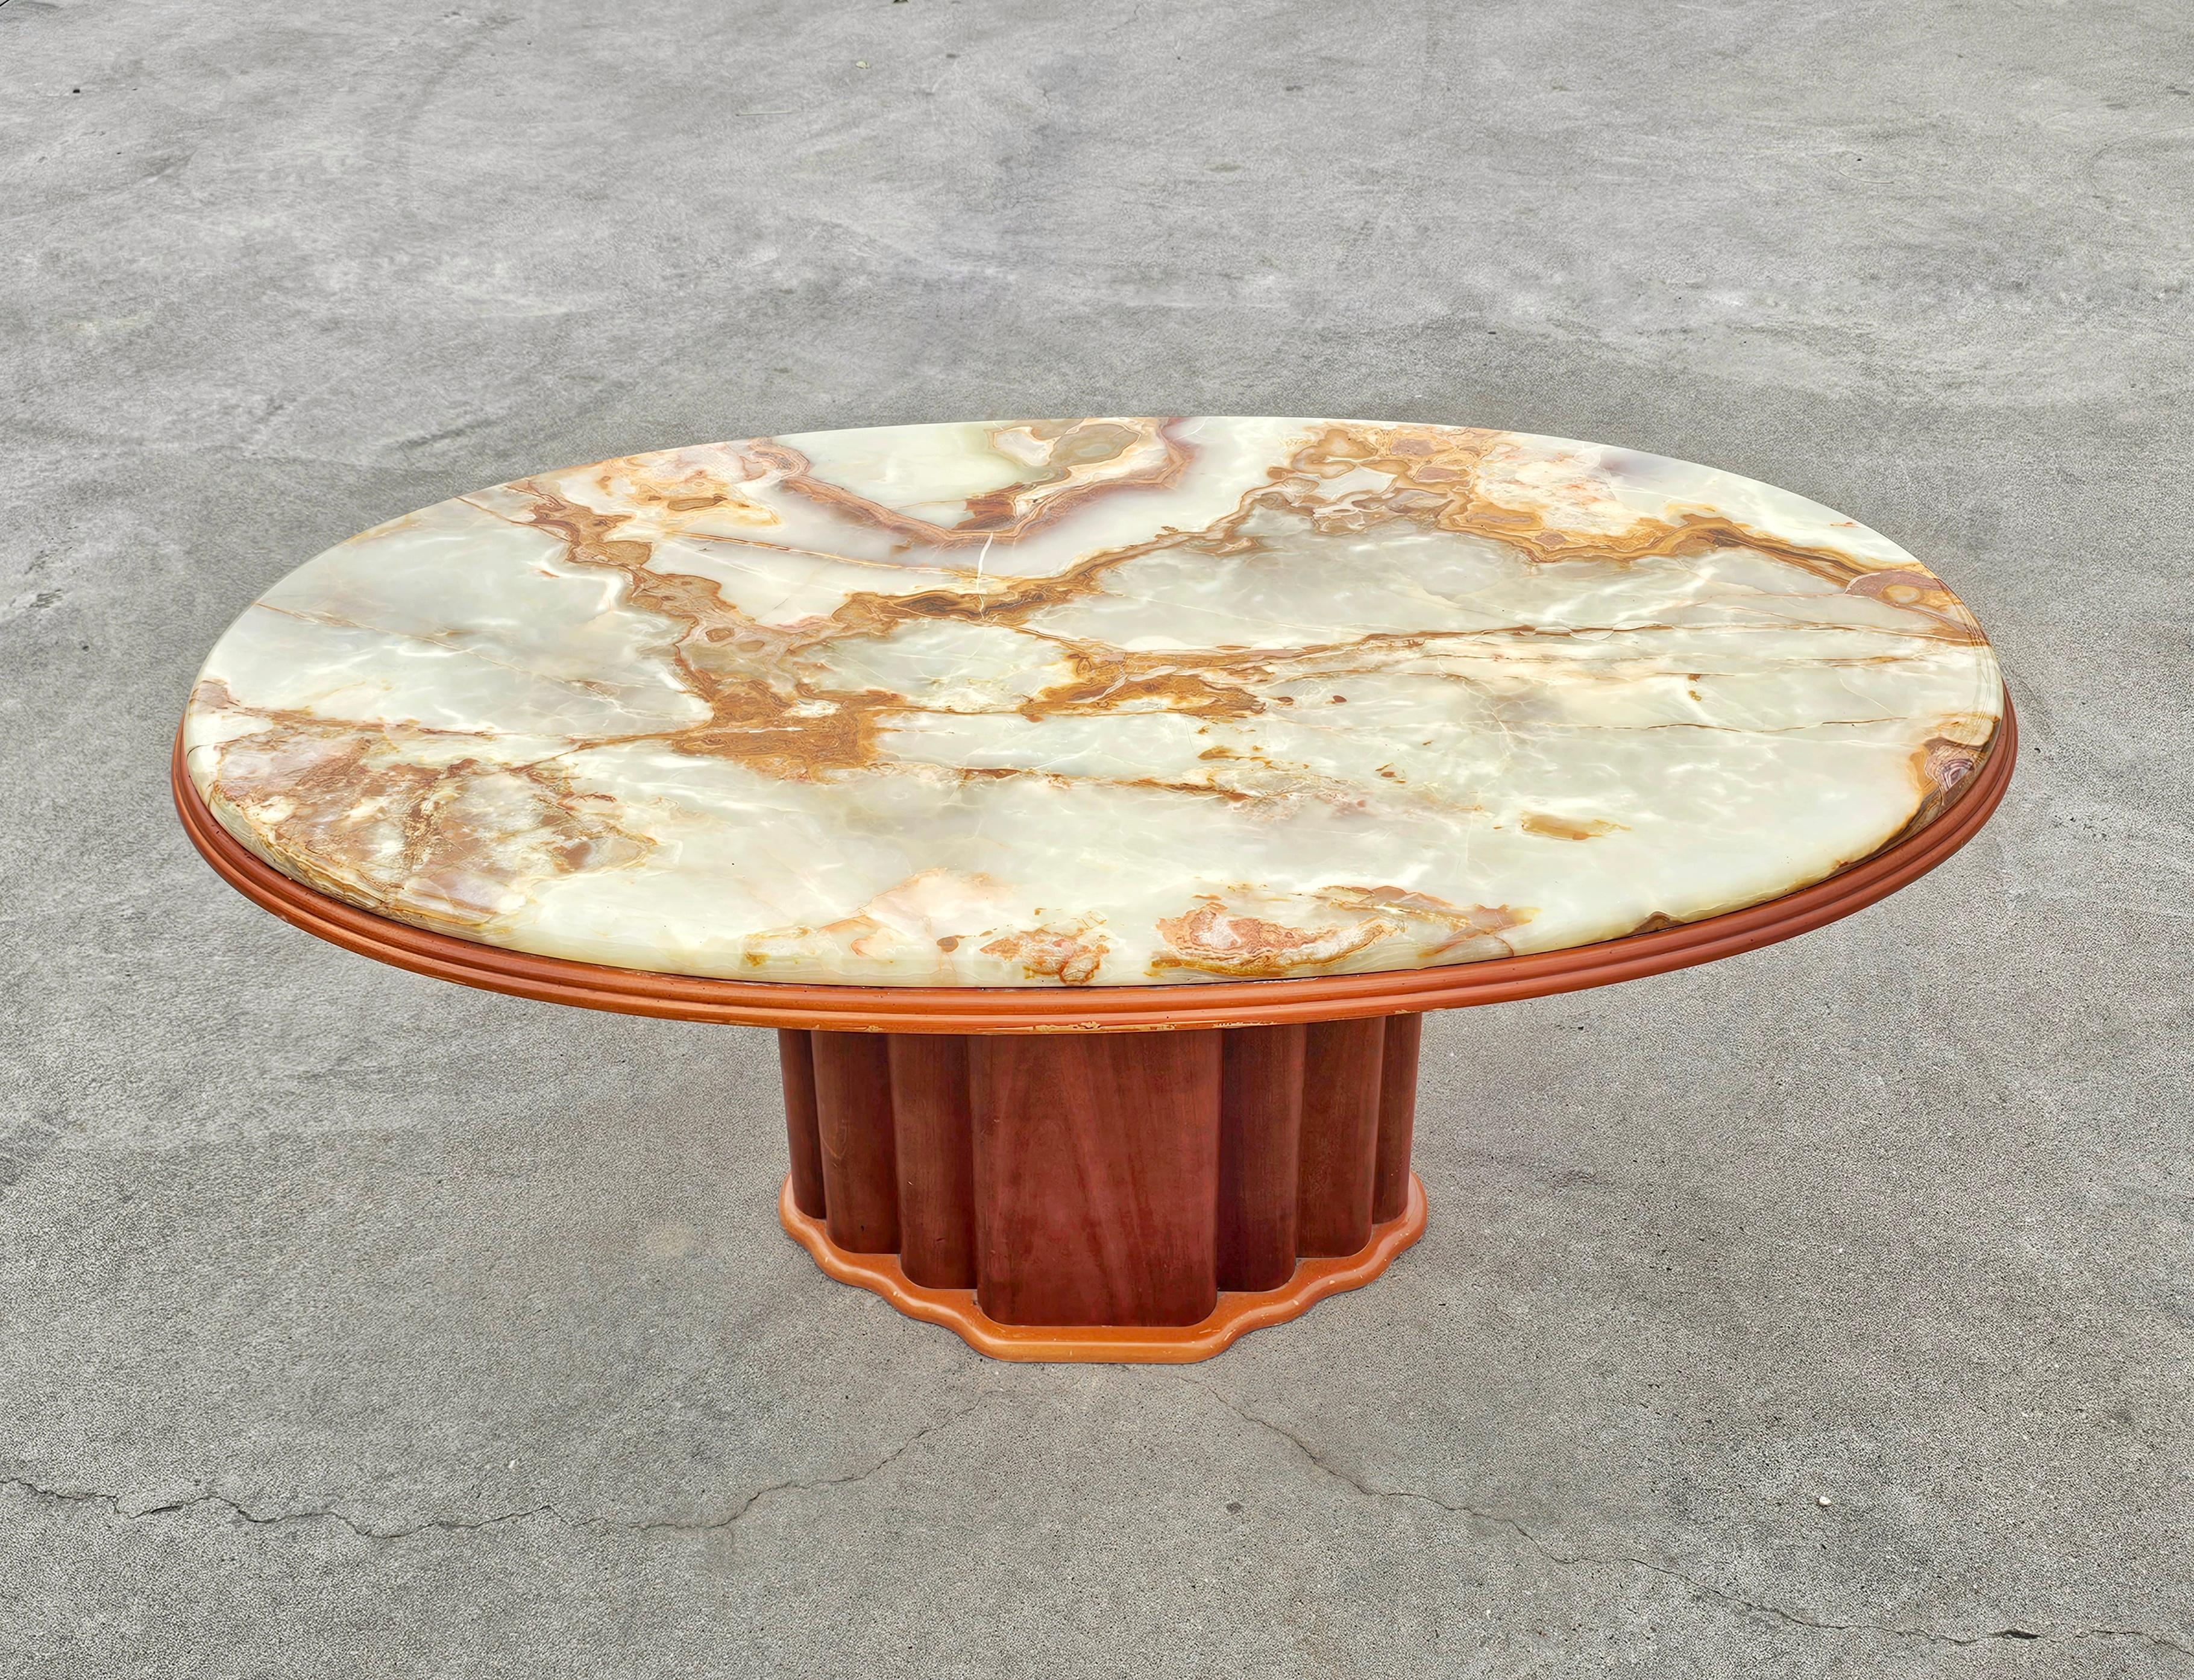 Dans cette annonce, vous trouverez une table basse d'inspiration Art Déco absolument magnifique. Il se compose d'une base en bois de cerisier et d'un magnifique plateau en marbre Onyx aux riches veines dorées. Fabriqué par Hohnert Design/One en